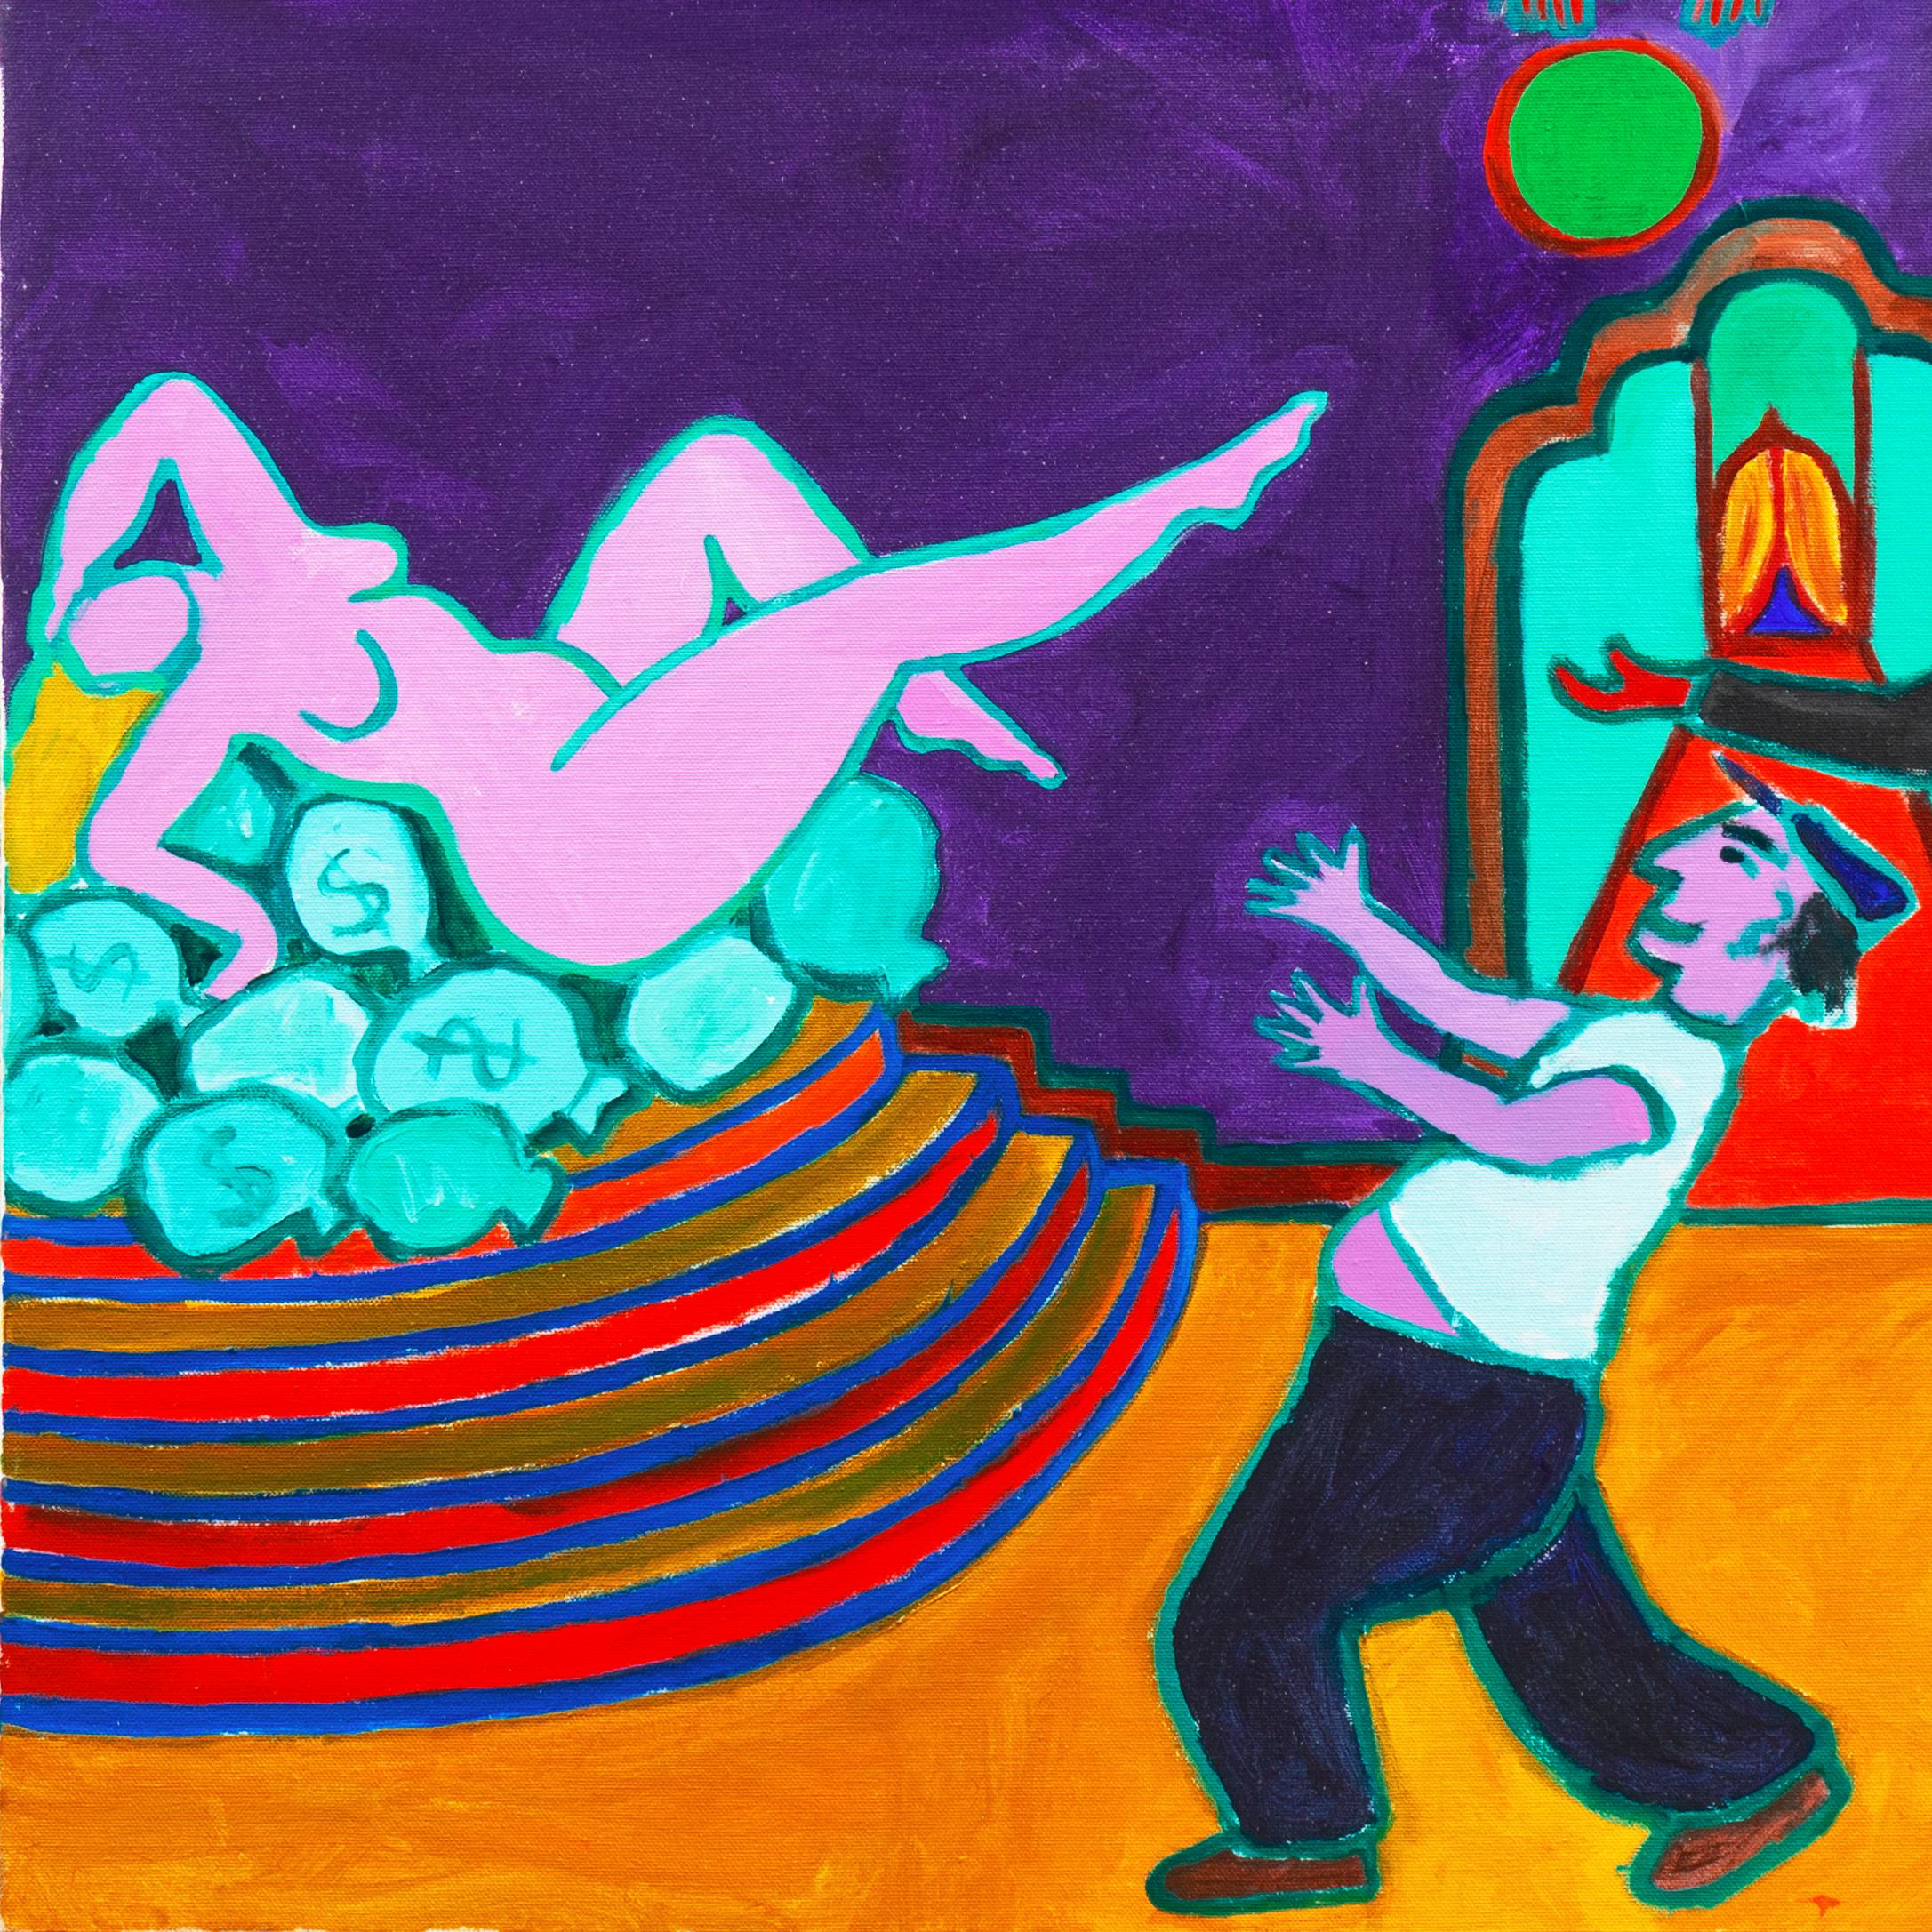 Peint par Dan May (américain, 1952-2019) vers 2010, et estampillé, au verso, d'une certification d'authenticité. 

Après avoir étudié avec Larry Stobie à l'Oregon College of Education, Dan May a exposé dans ses galeries 